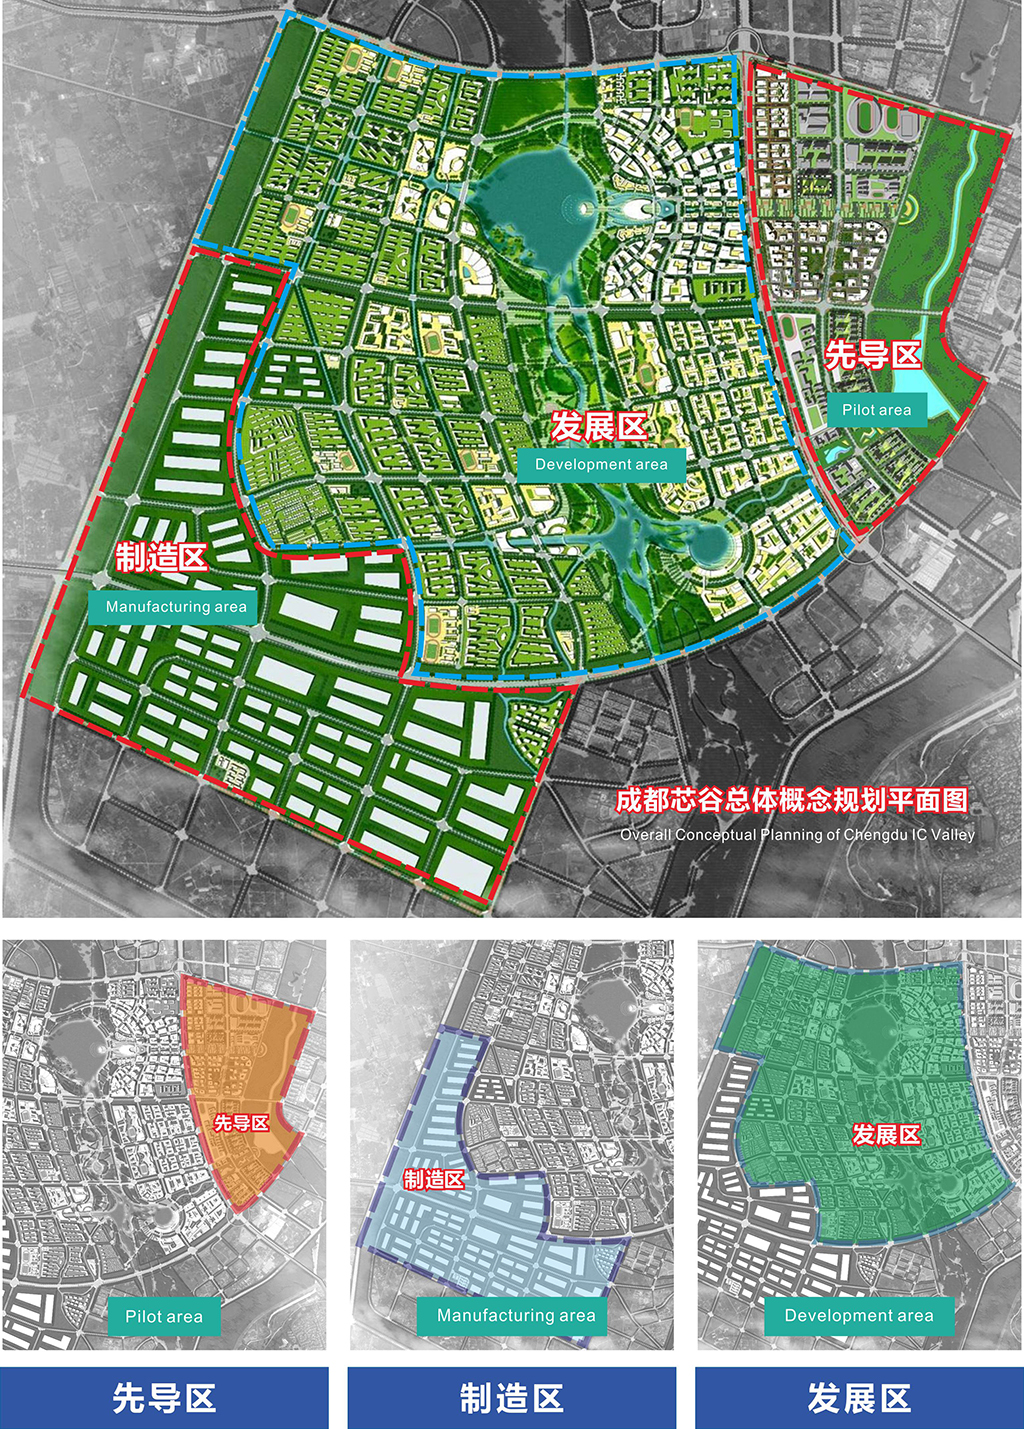 要求宗地二位于双流城区东升片区,面积大到181亩,不过没有规划住宅